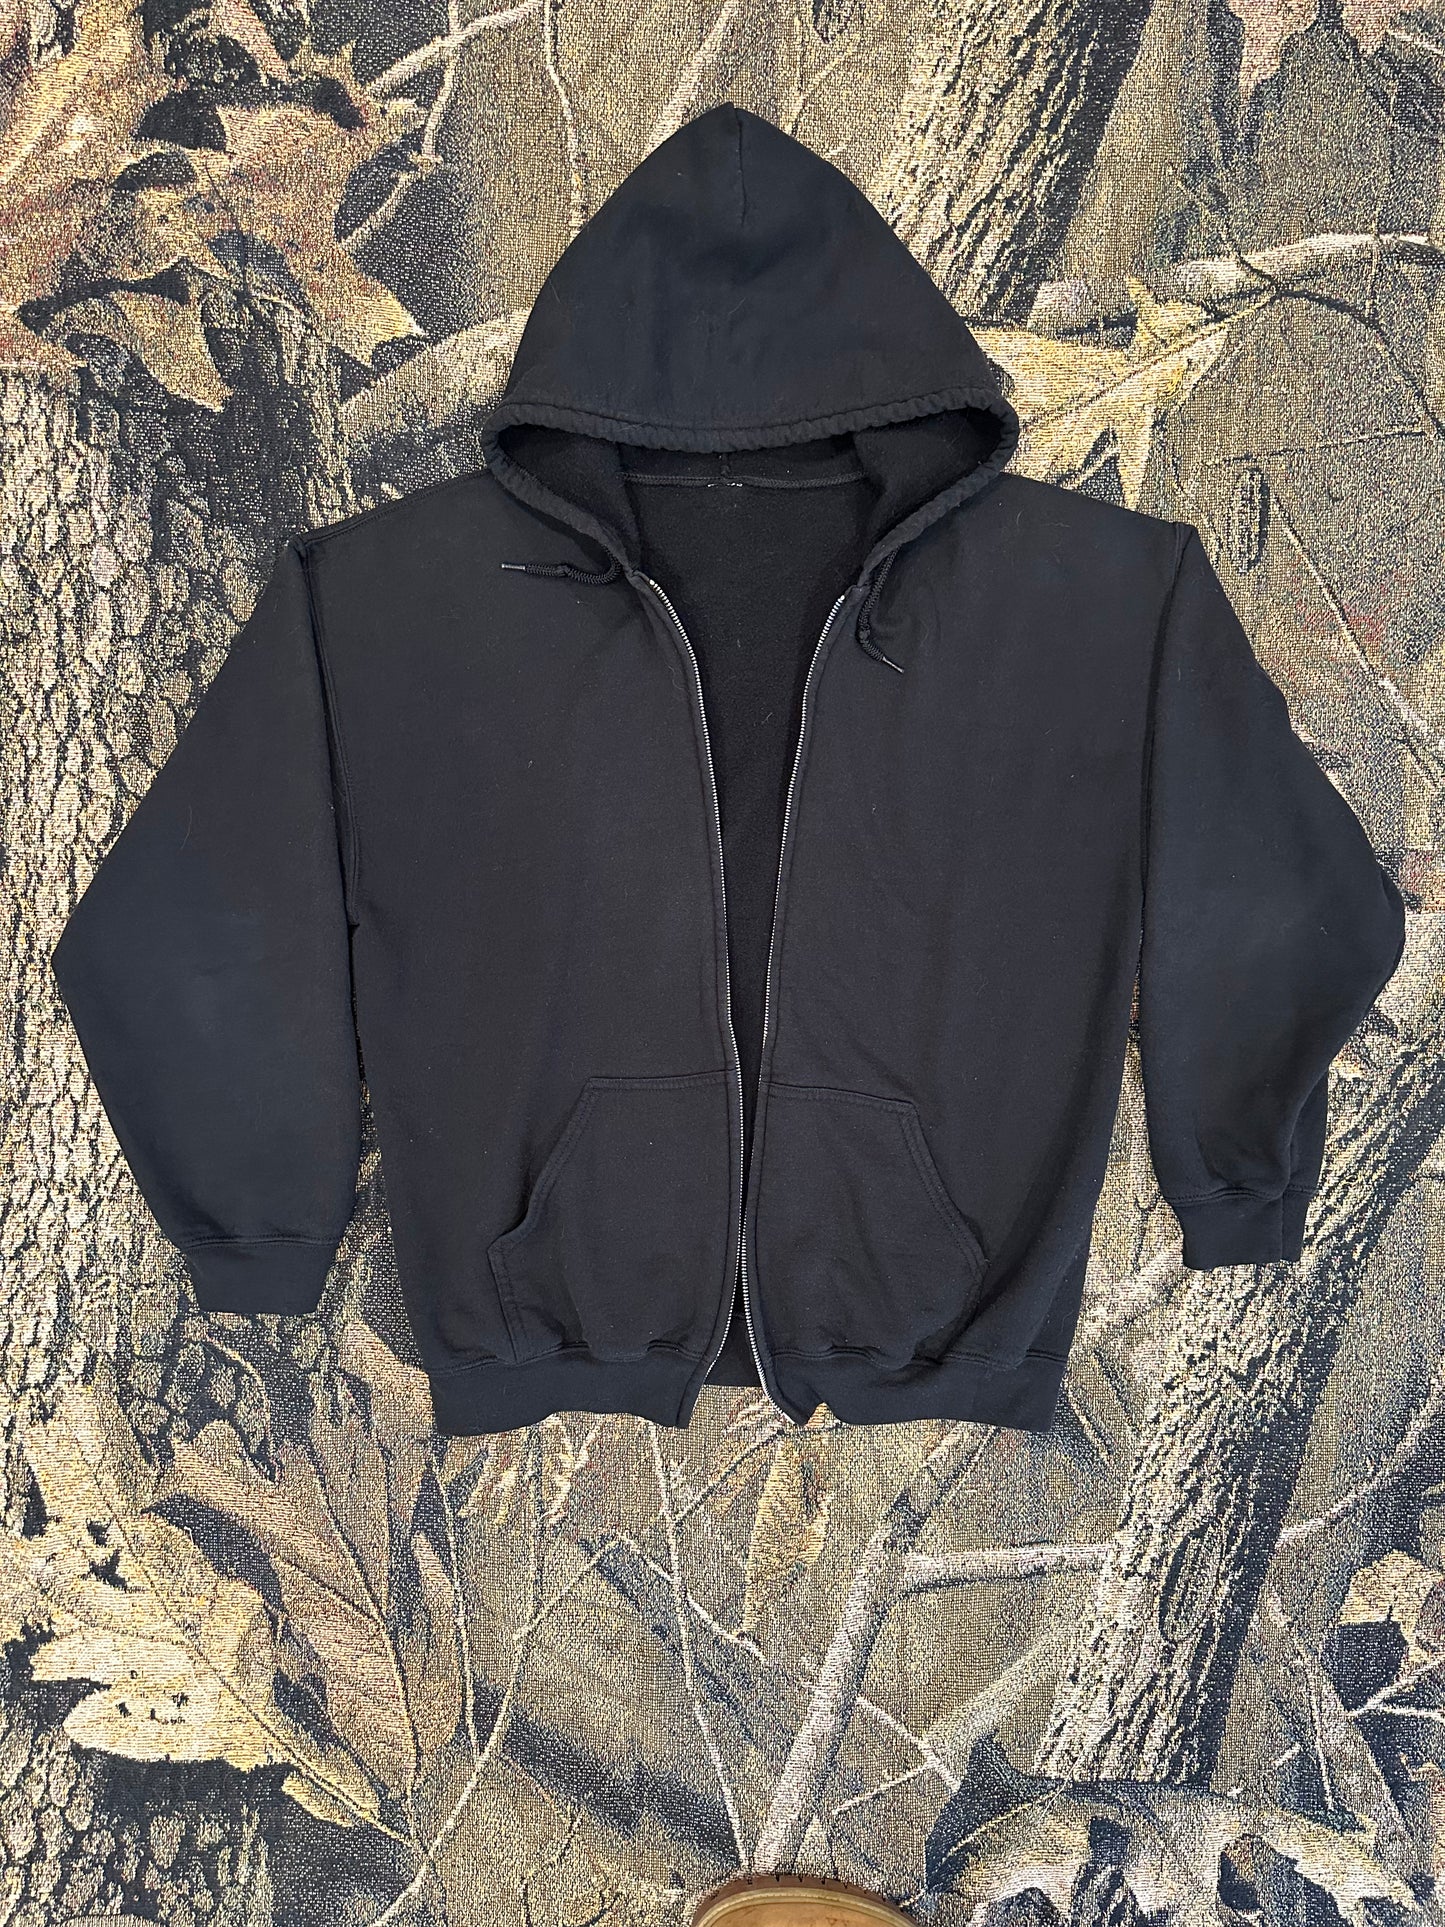 Blank black zip up hoodie